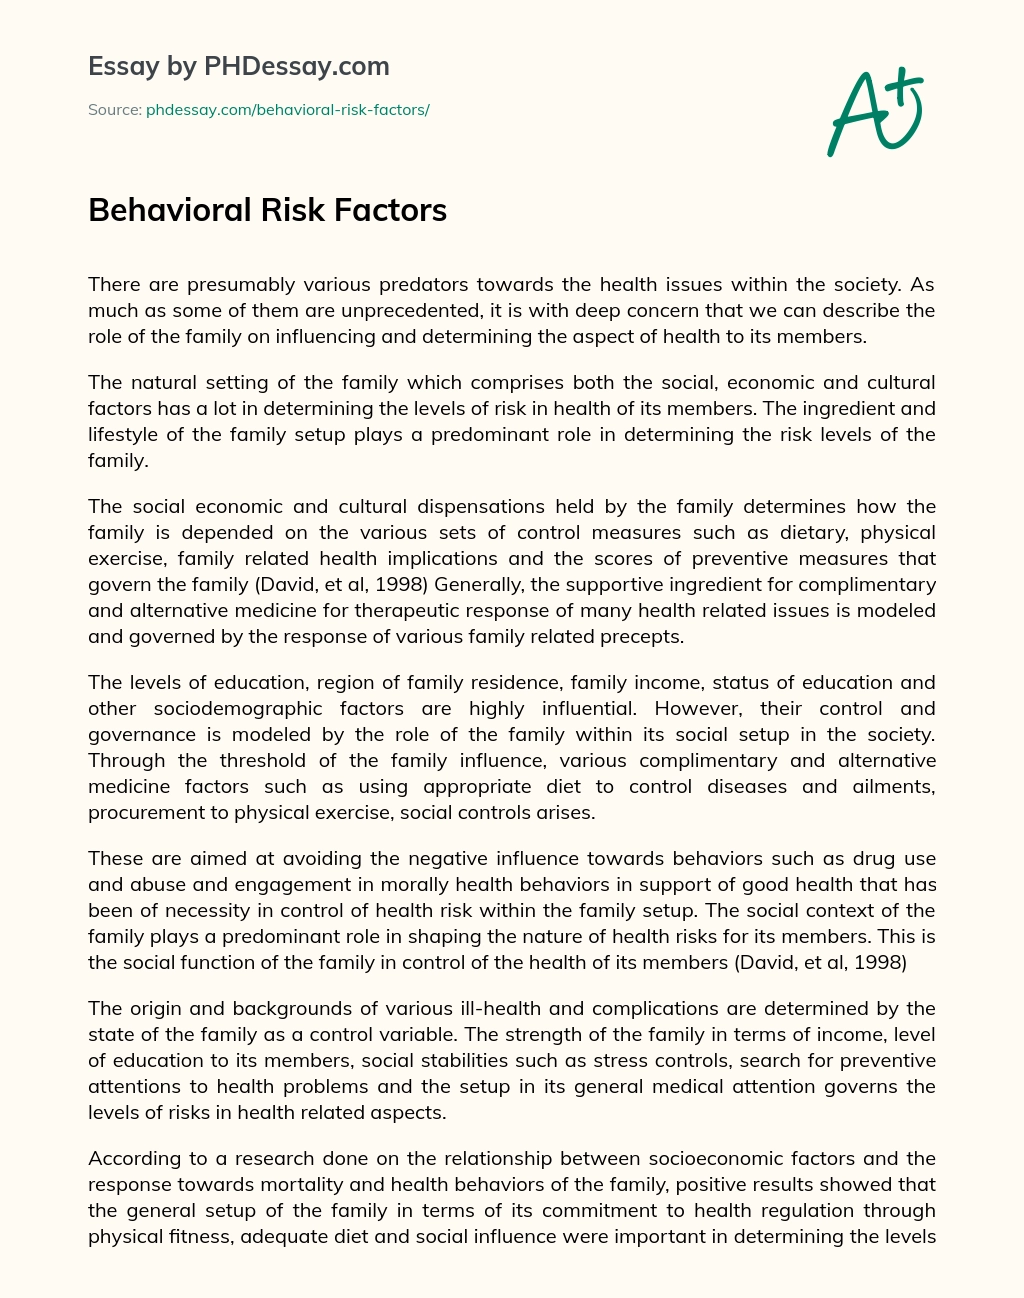 project risk factors and behaviors essay